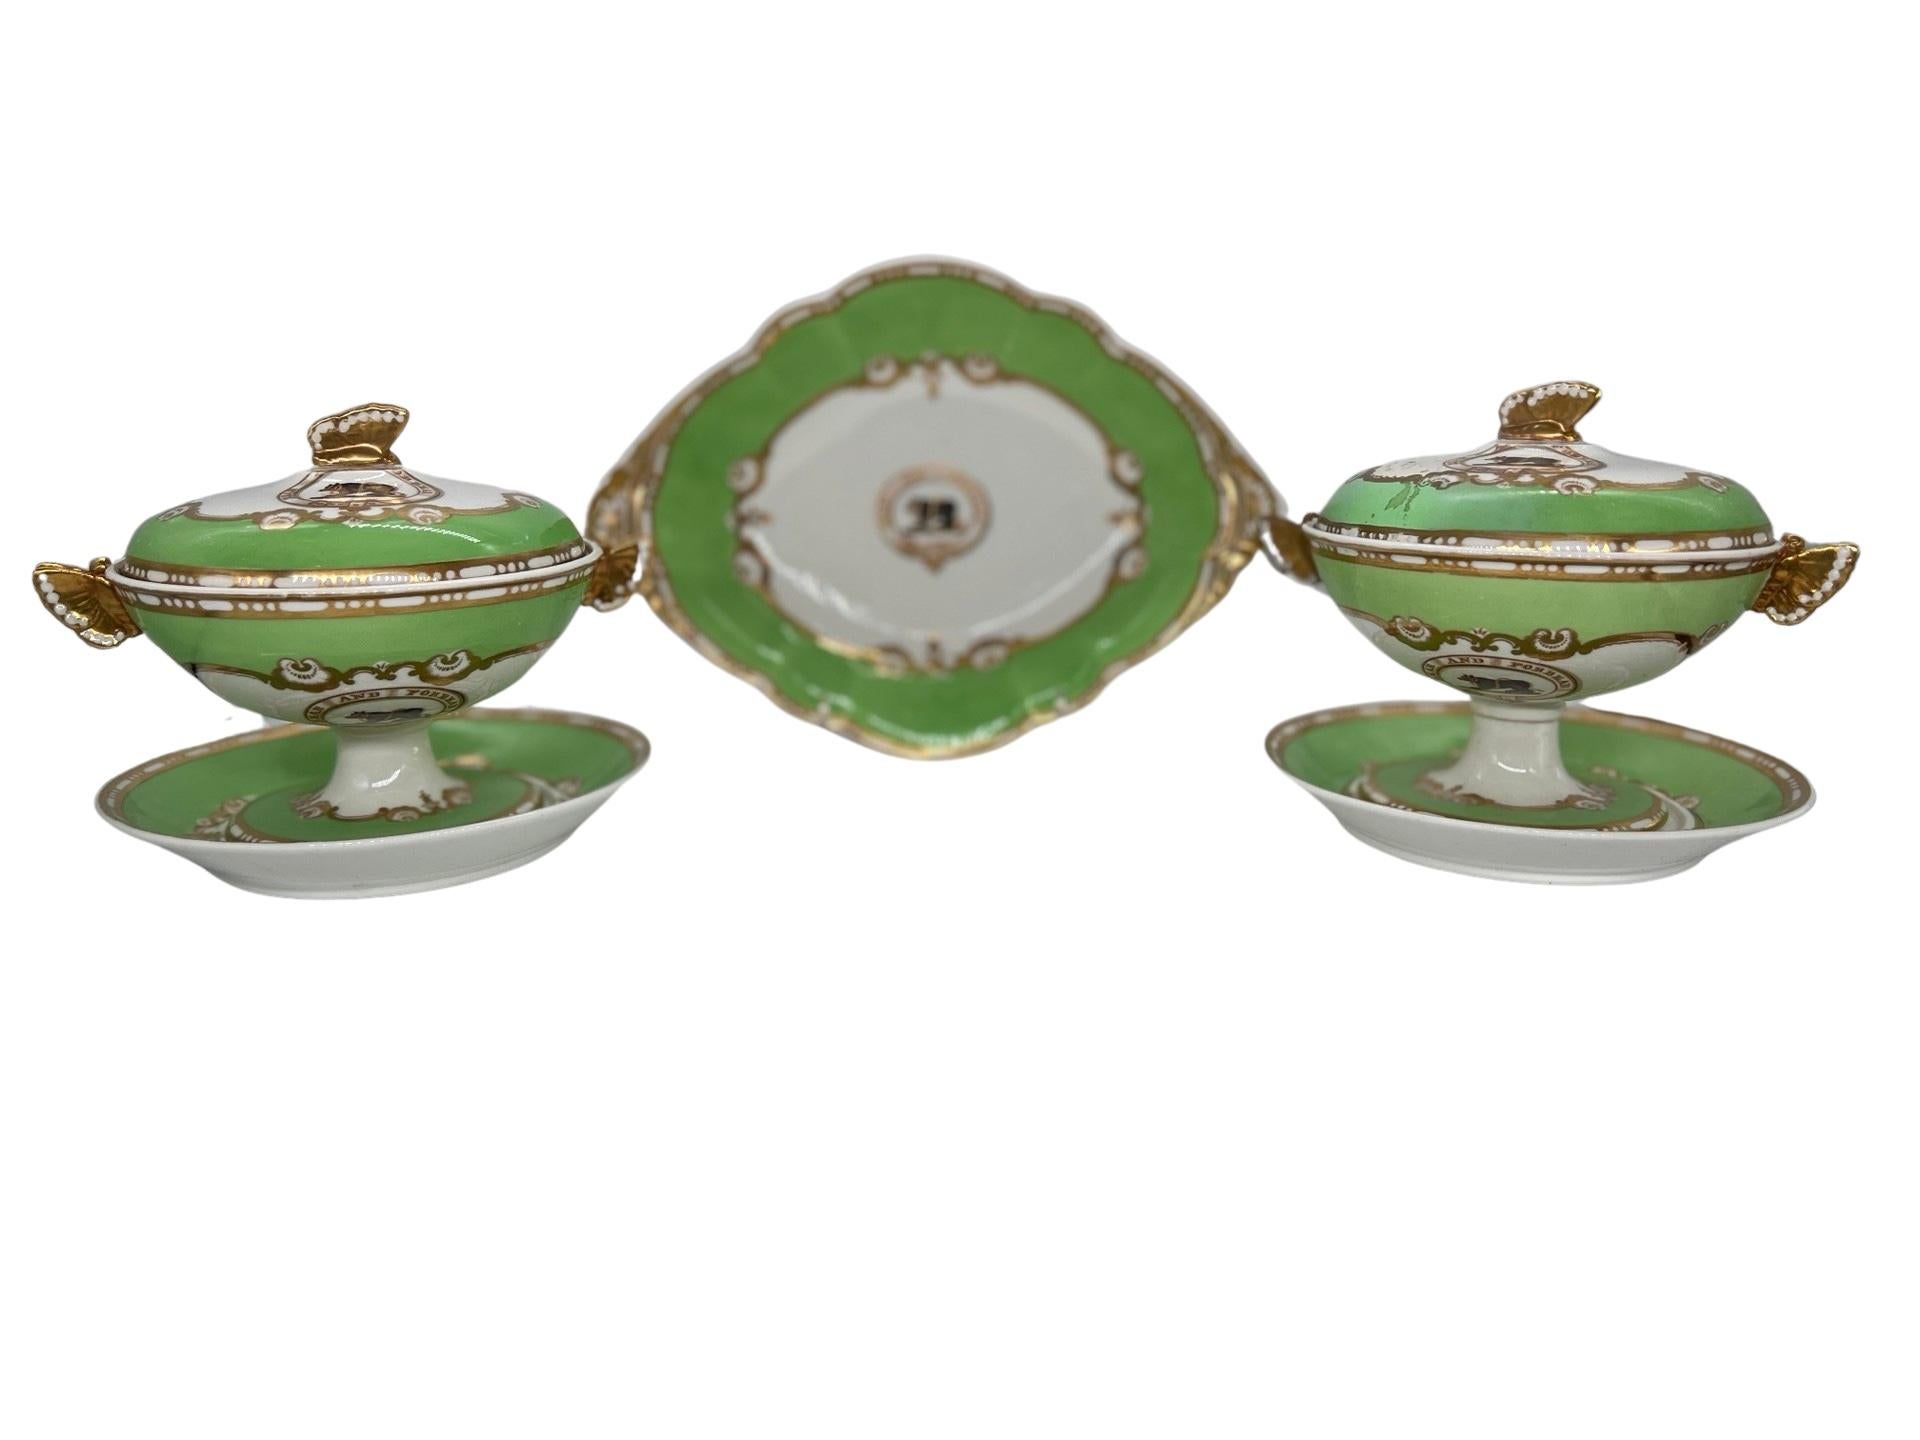 Spode (Angleterre, fondée en 1770), porcelaine Felspar (introduite en 1821), vers 1840.

Ensemble de 3 pièces en porcelaine ancienne de Spode Sauce comprenant une paire de soupières couvertes et un plateau à dessert. Chaque pièce a une base de